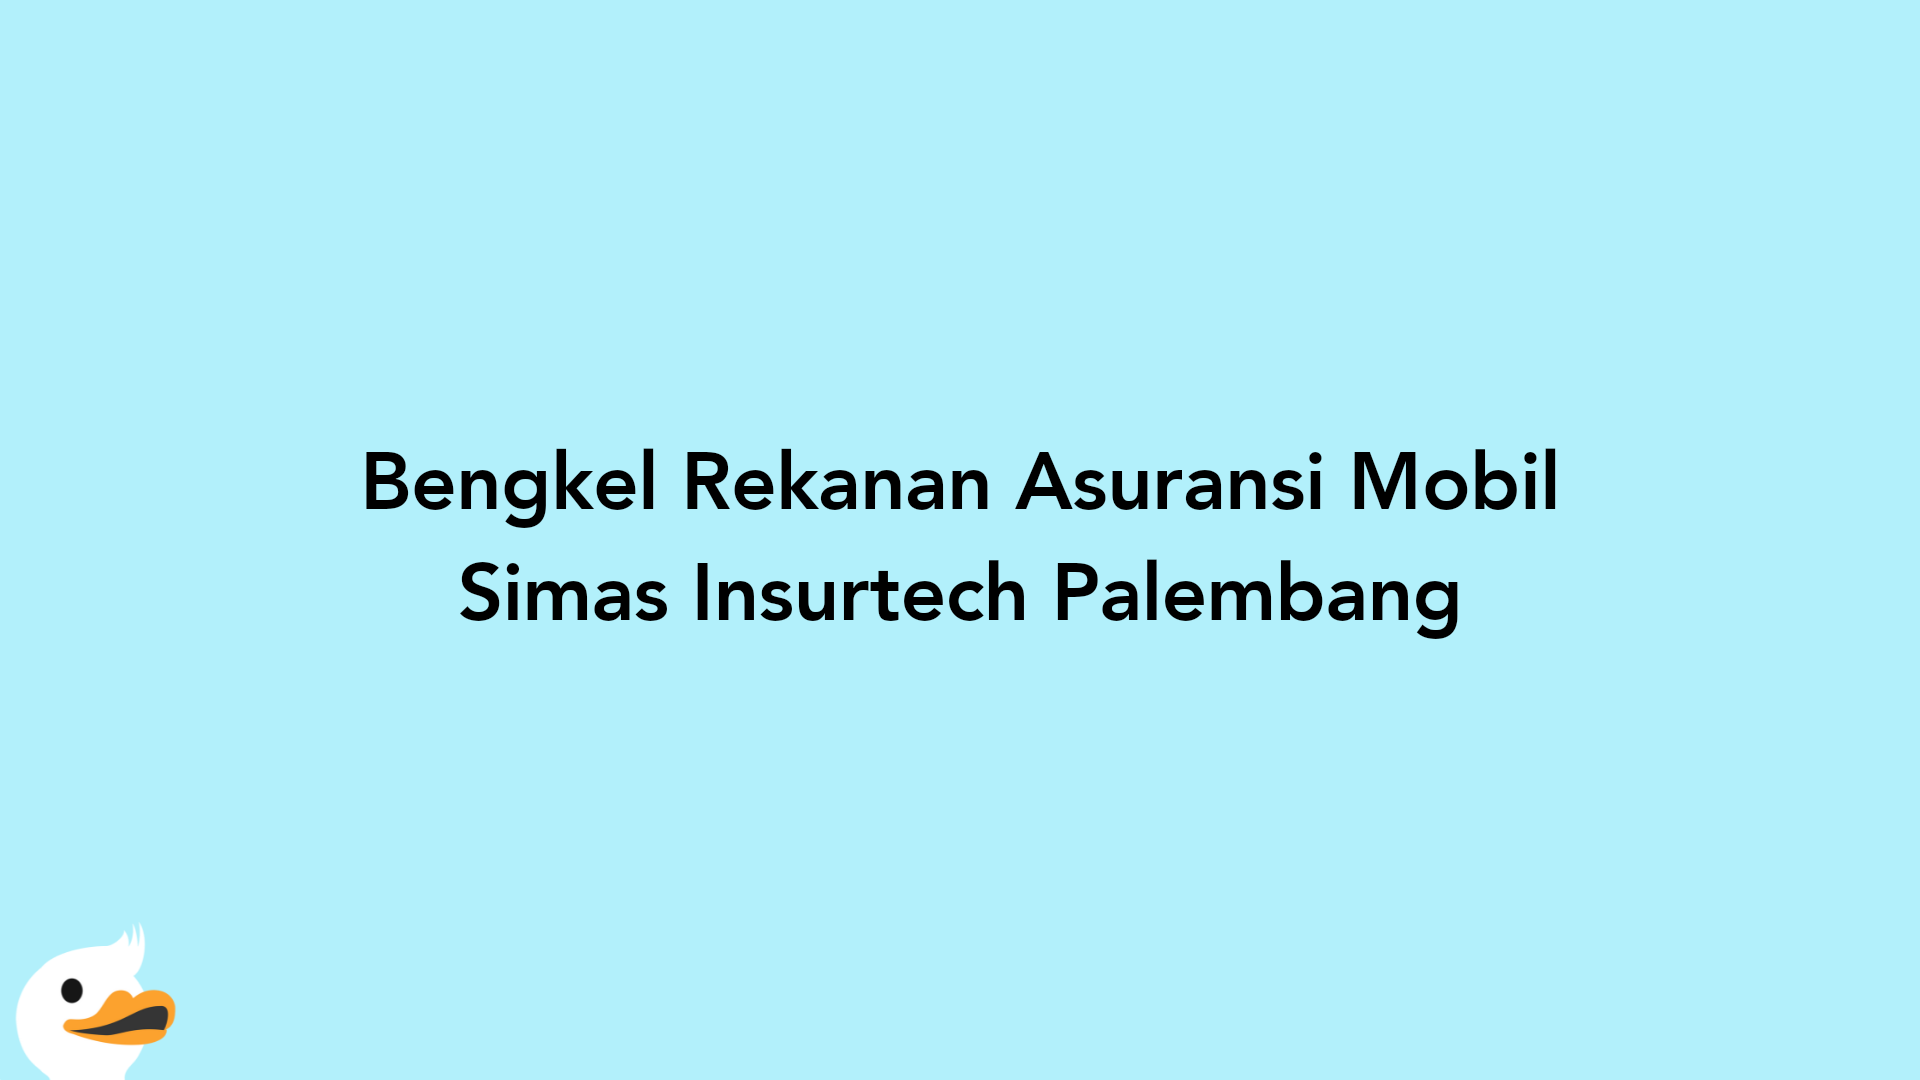 Bengkel Rekanan Asuransi Mobil Simas Insurtech Palembang